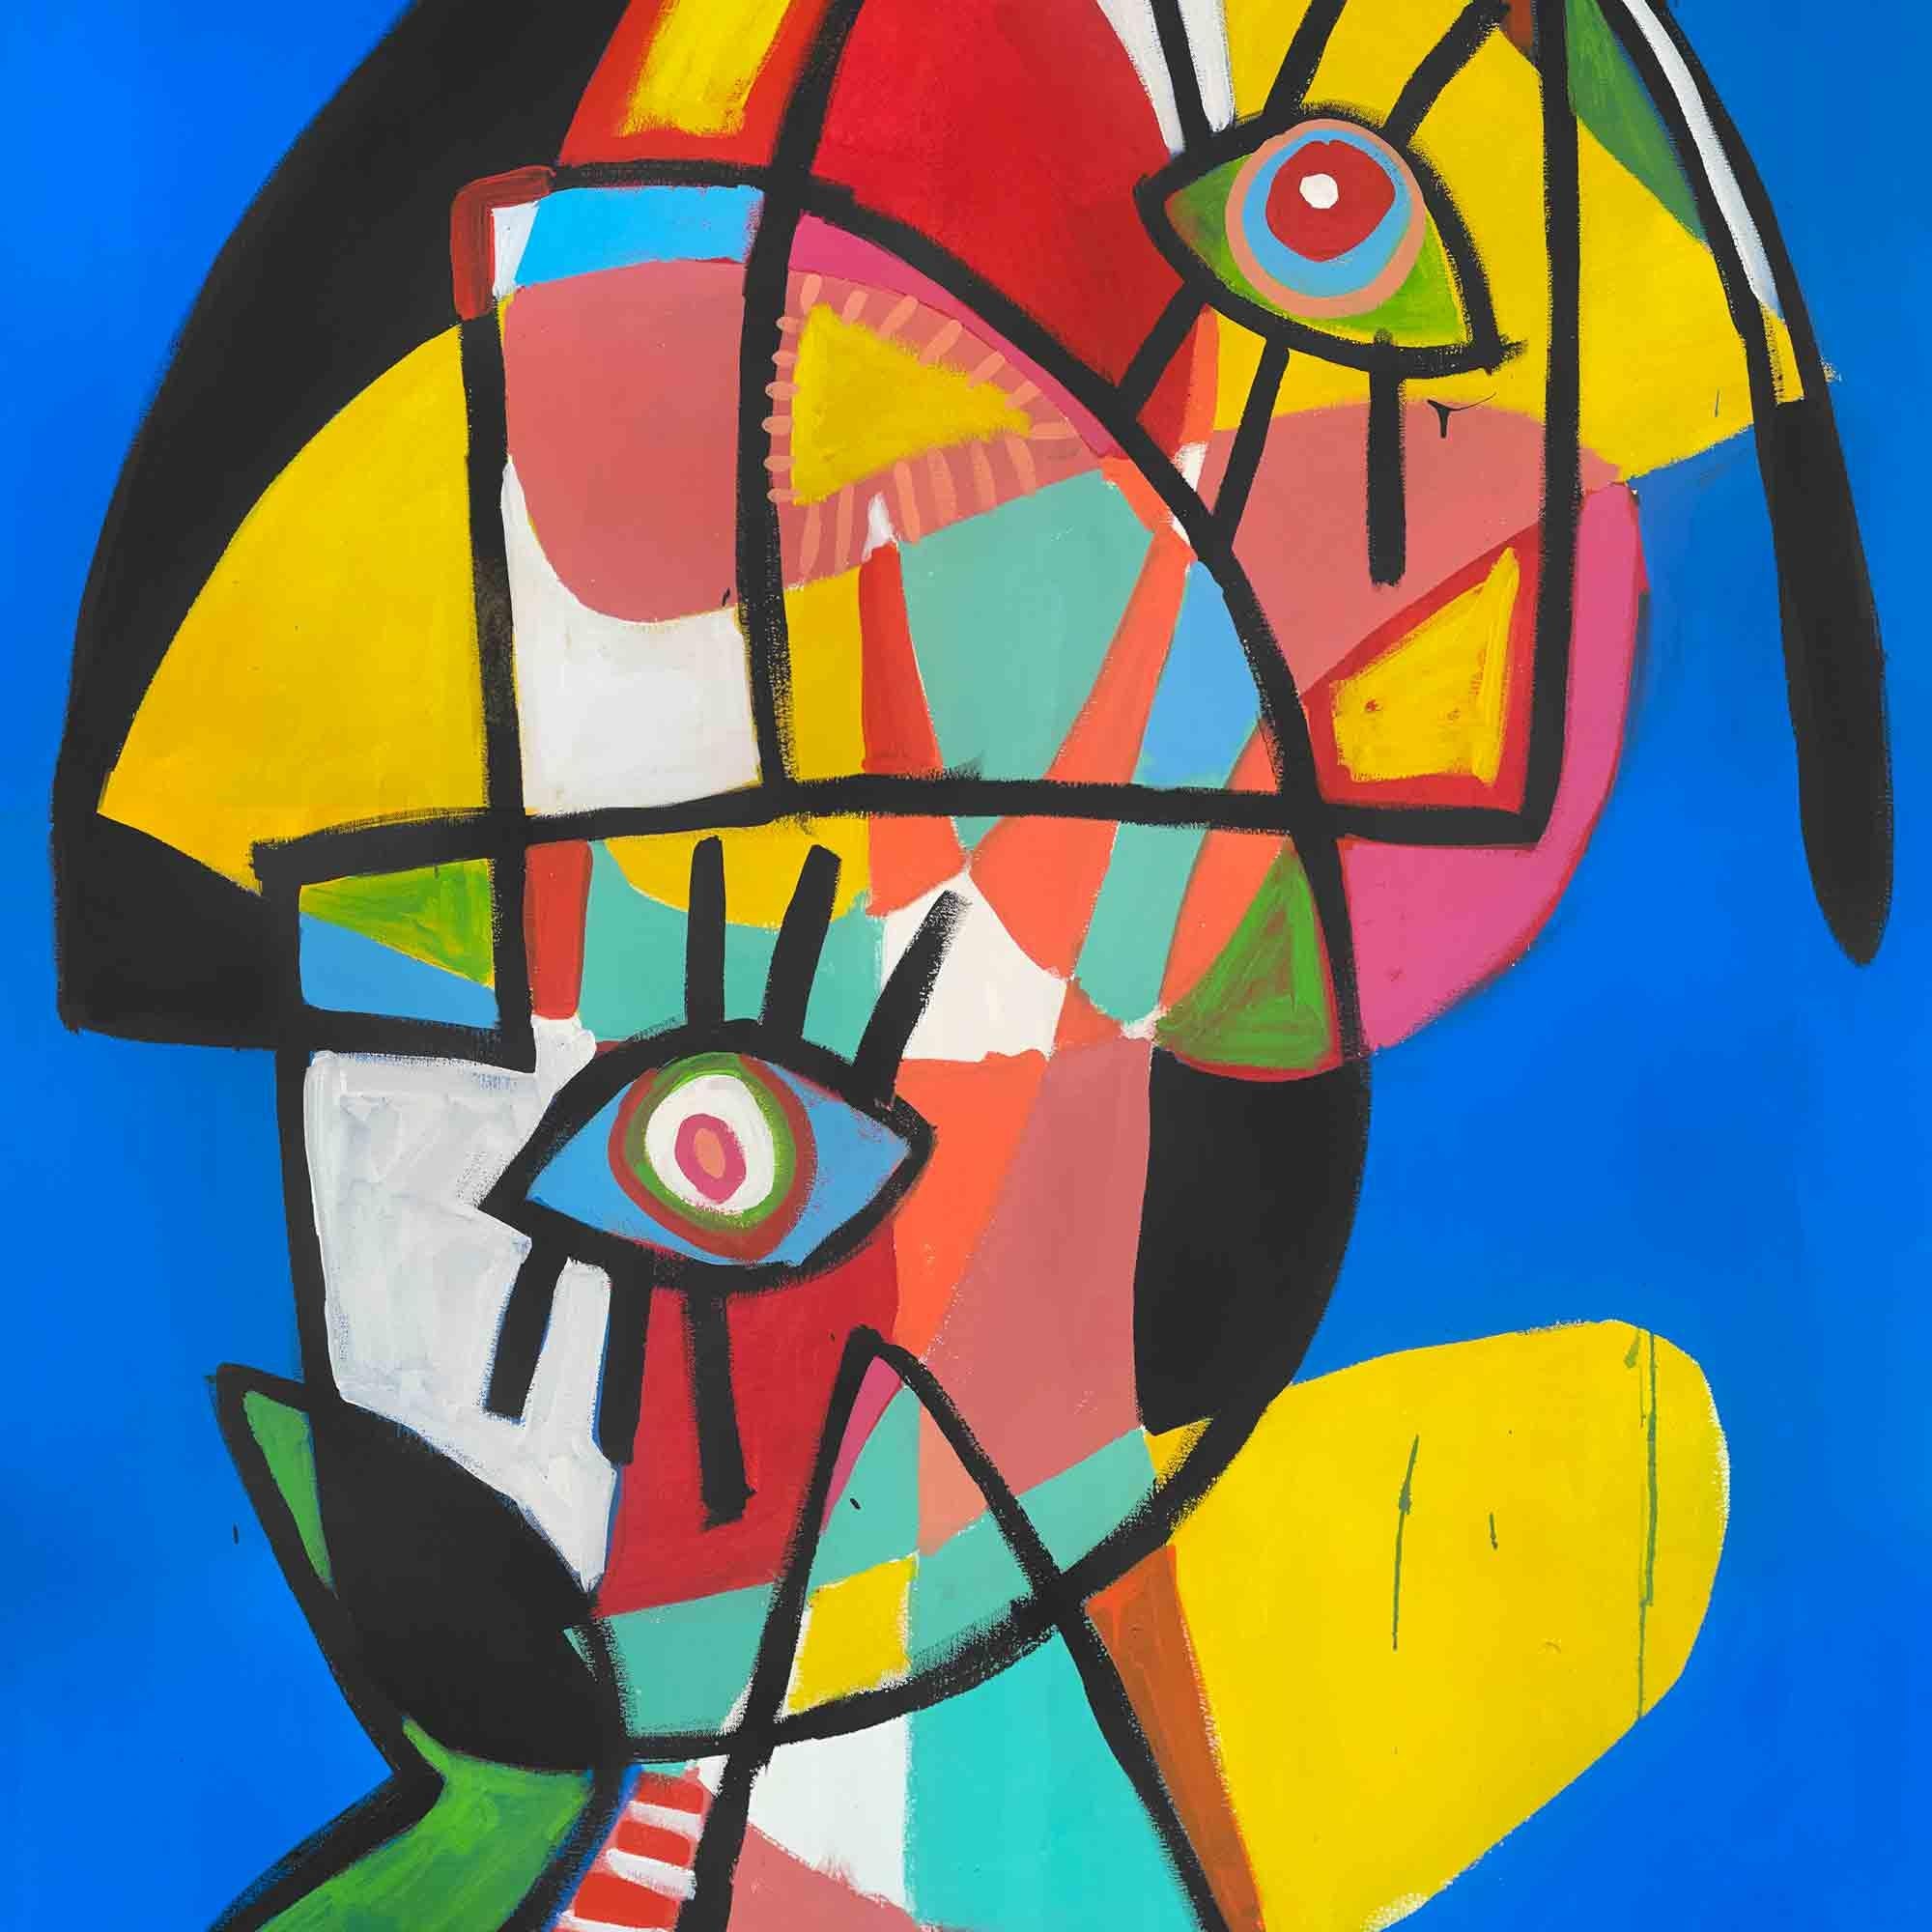 Art contemporain, peinture abstraite
Acrylique sur toile
180x130cm
Signé 



A propos de l'artiste
Enrique Pichardo (Mexico, 1973) est diplômé de l'Escuela Nacional de Pintura, Escultura y Grabado (ENPEG) 